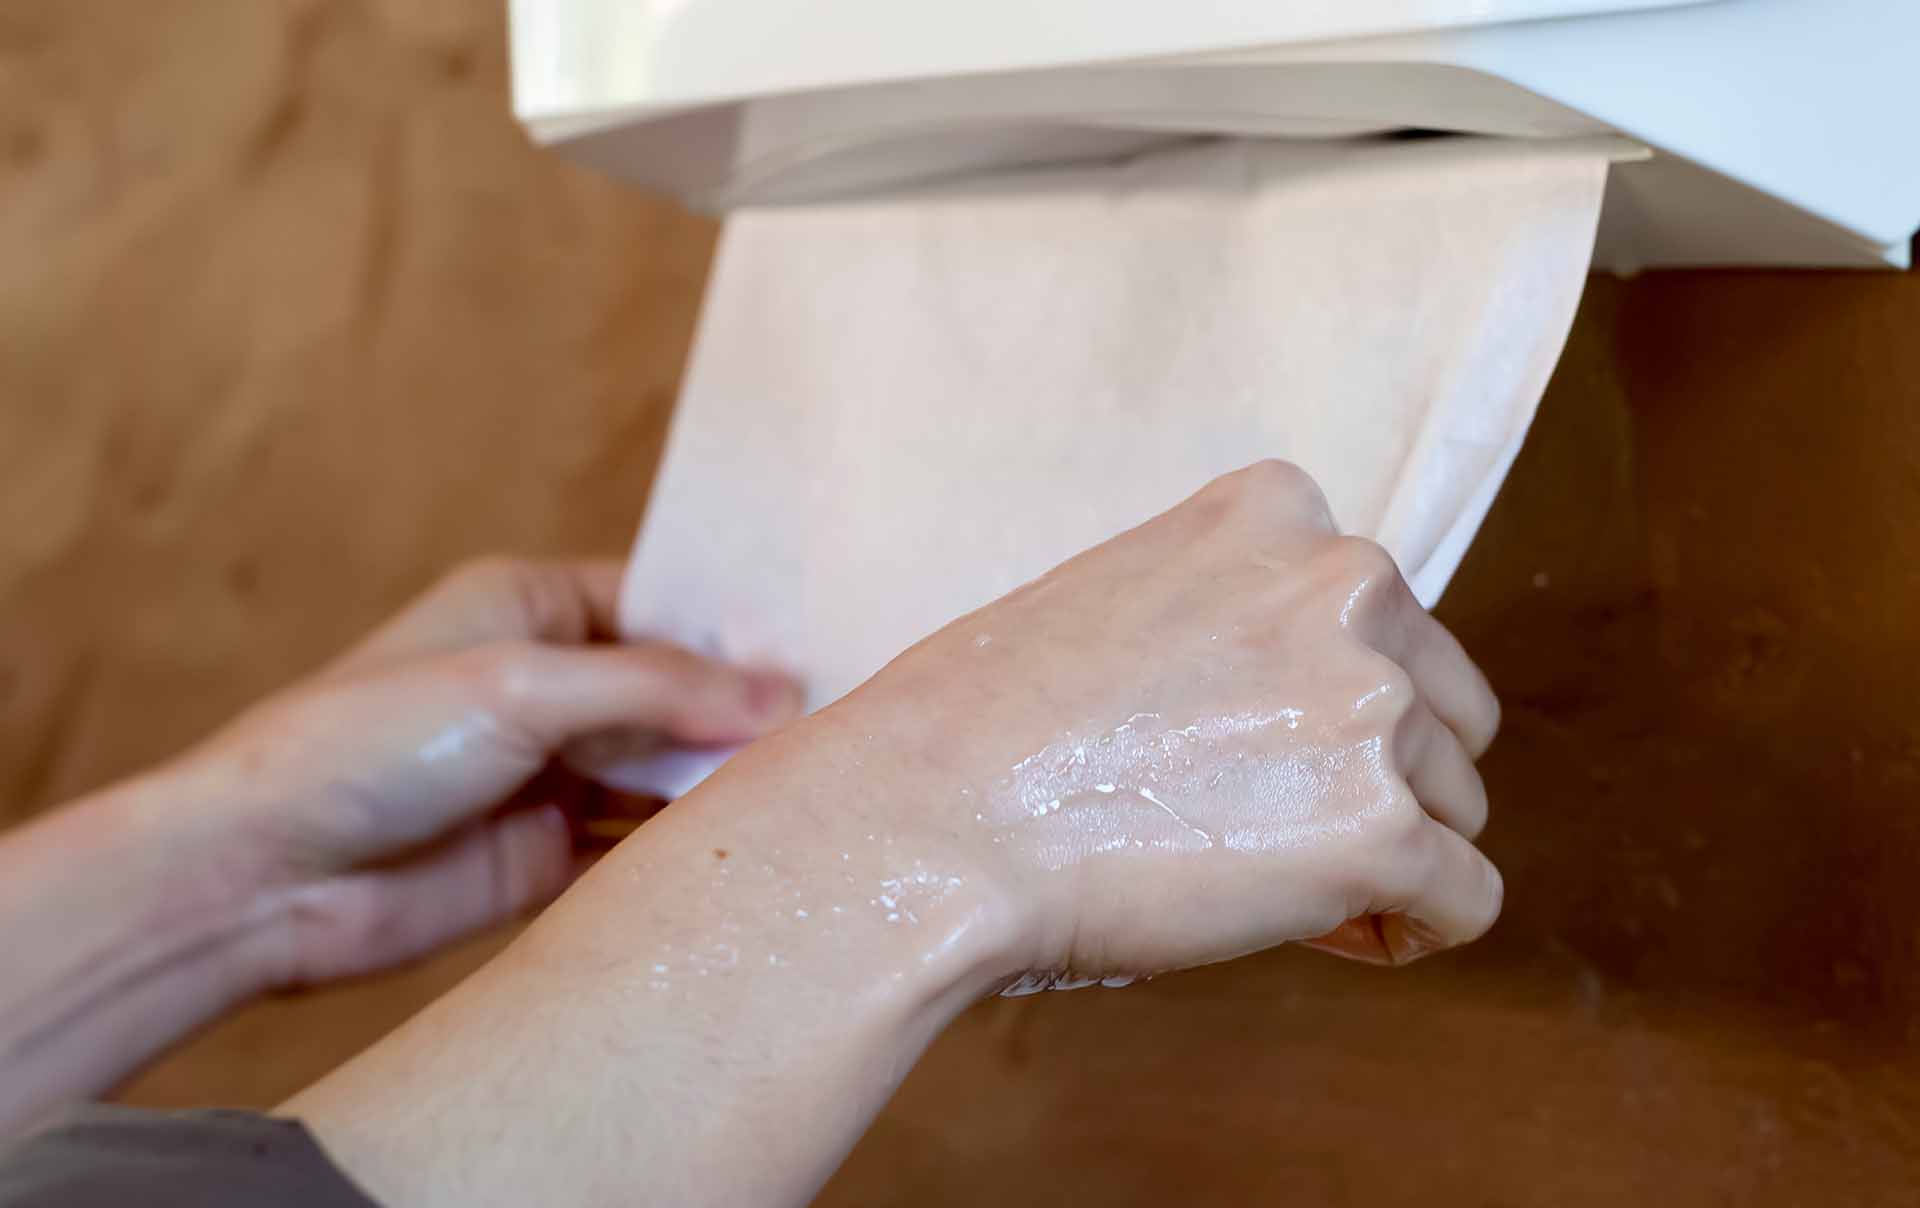 Toallas de papel o secadores de manos. Cual es la mejor opcion?